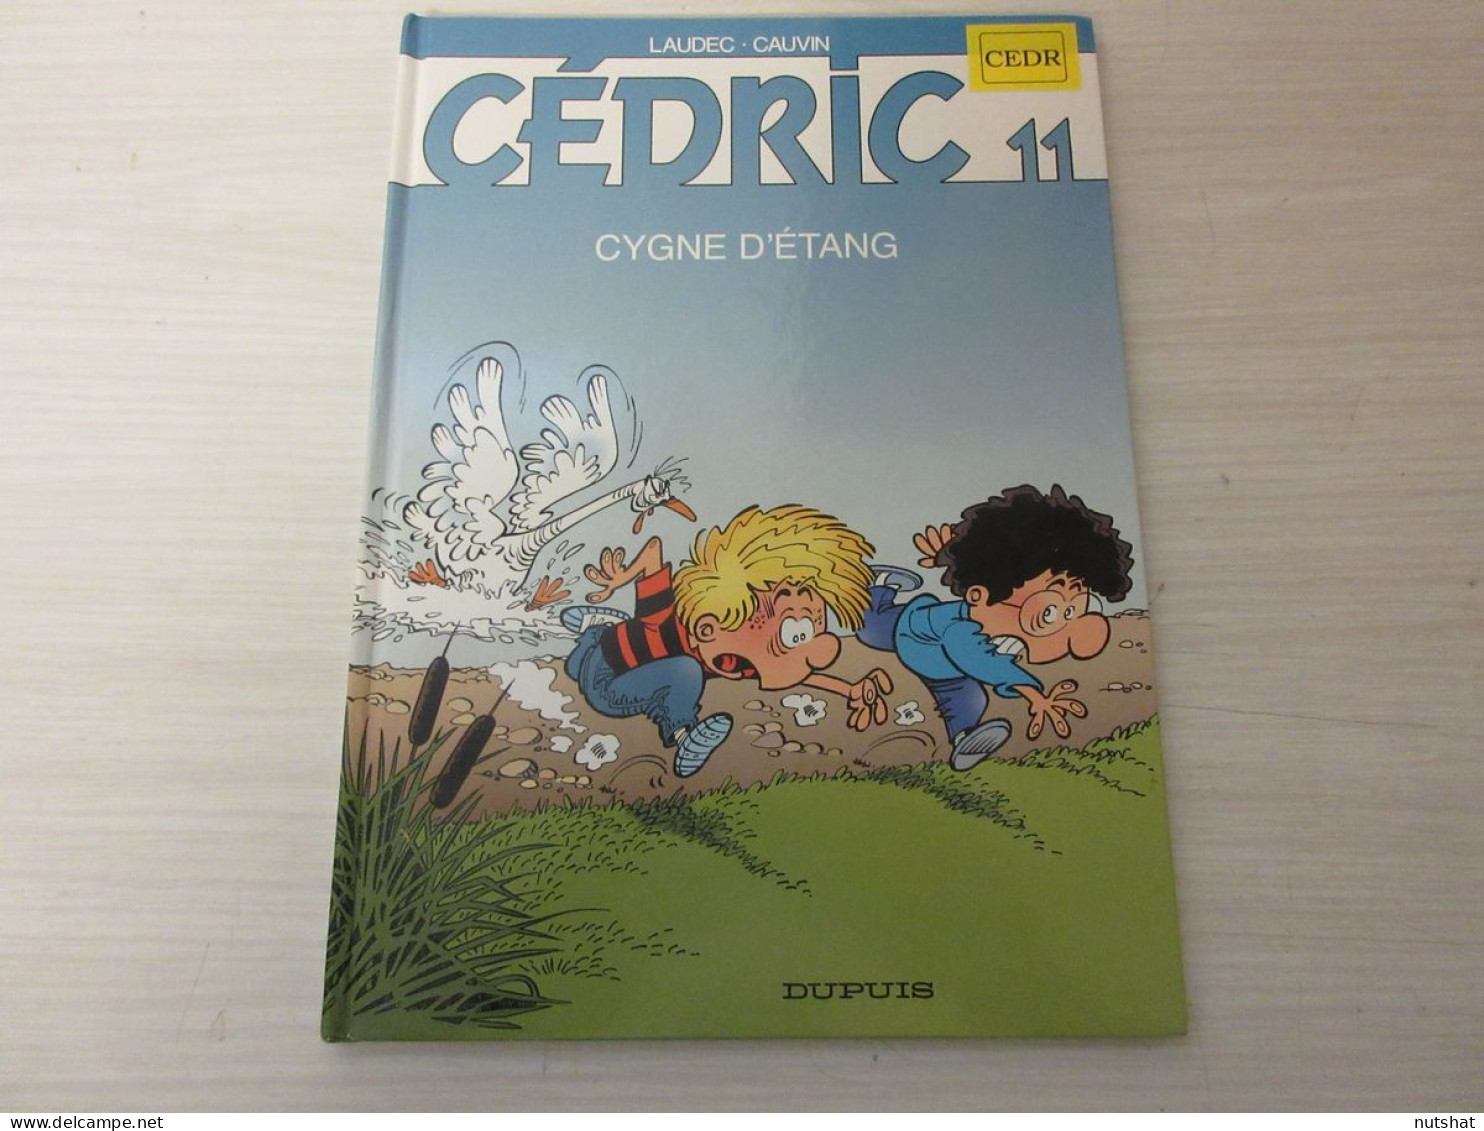 BD CEDRIC 11 CYGNE D'ETANG - LAUDEC CAUVIN - 1997 - Editions Dupuis - 46 Pages. - Cédric